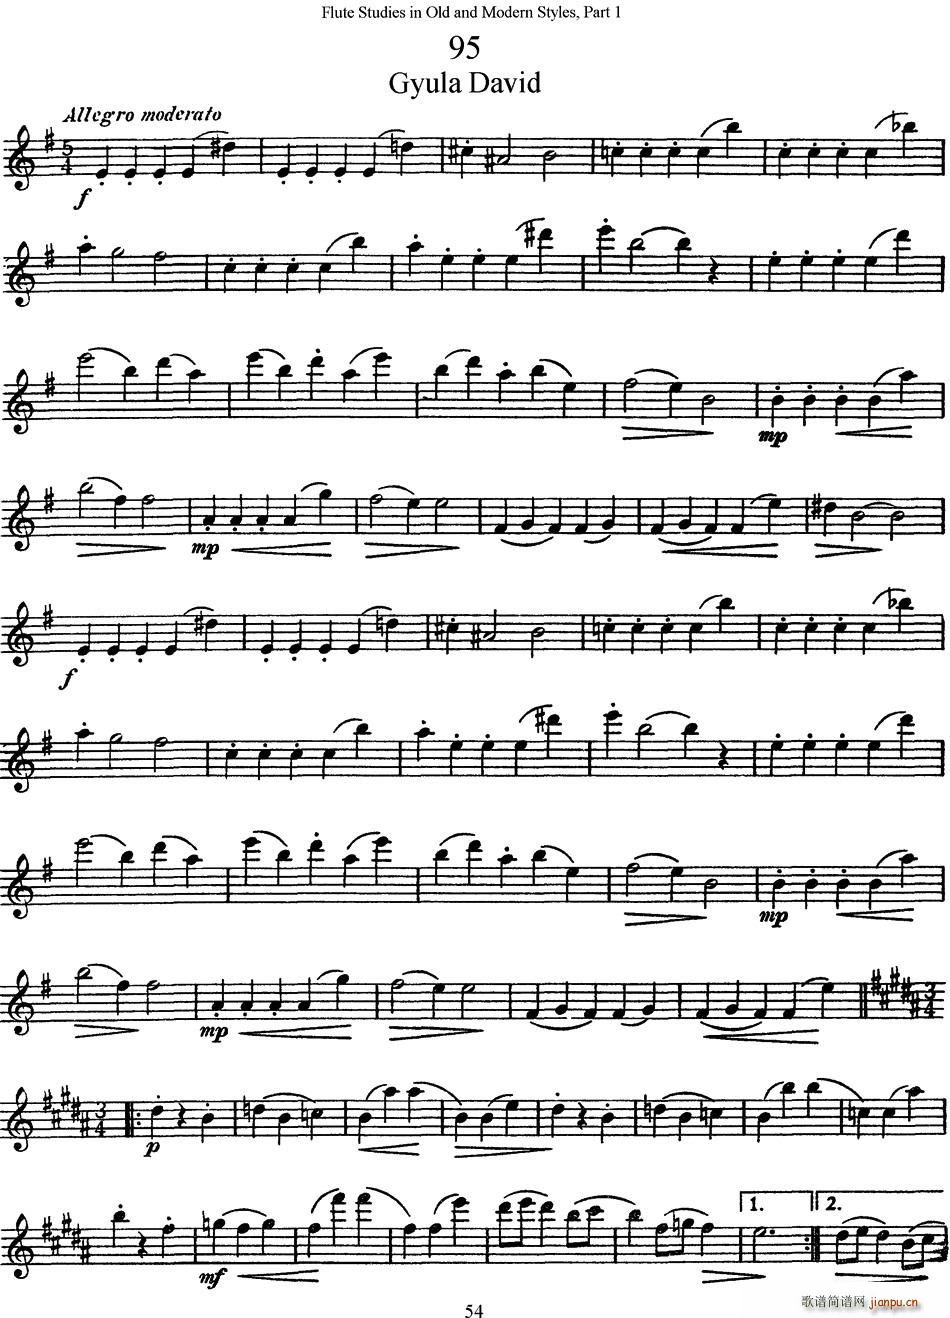 斯勒新老風格長笛練習重奏曲 第一部分 NO 95 NO 96 長笛(笛簫譜)1